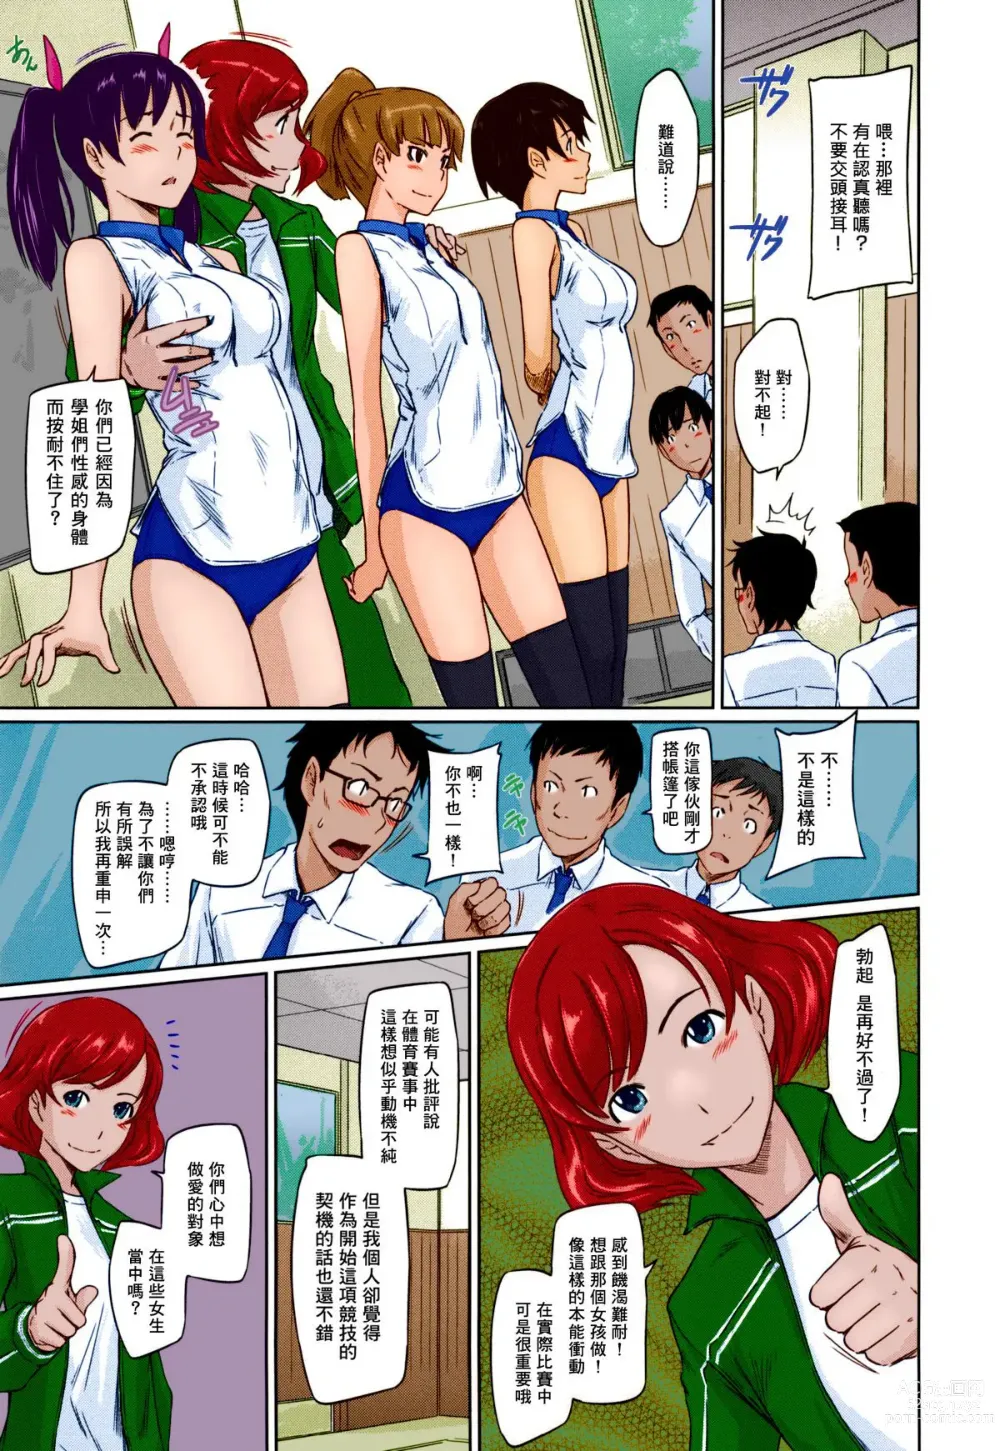 Page 14 of manga Suki ni nattara itchokusen!